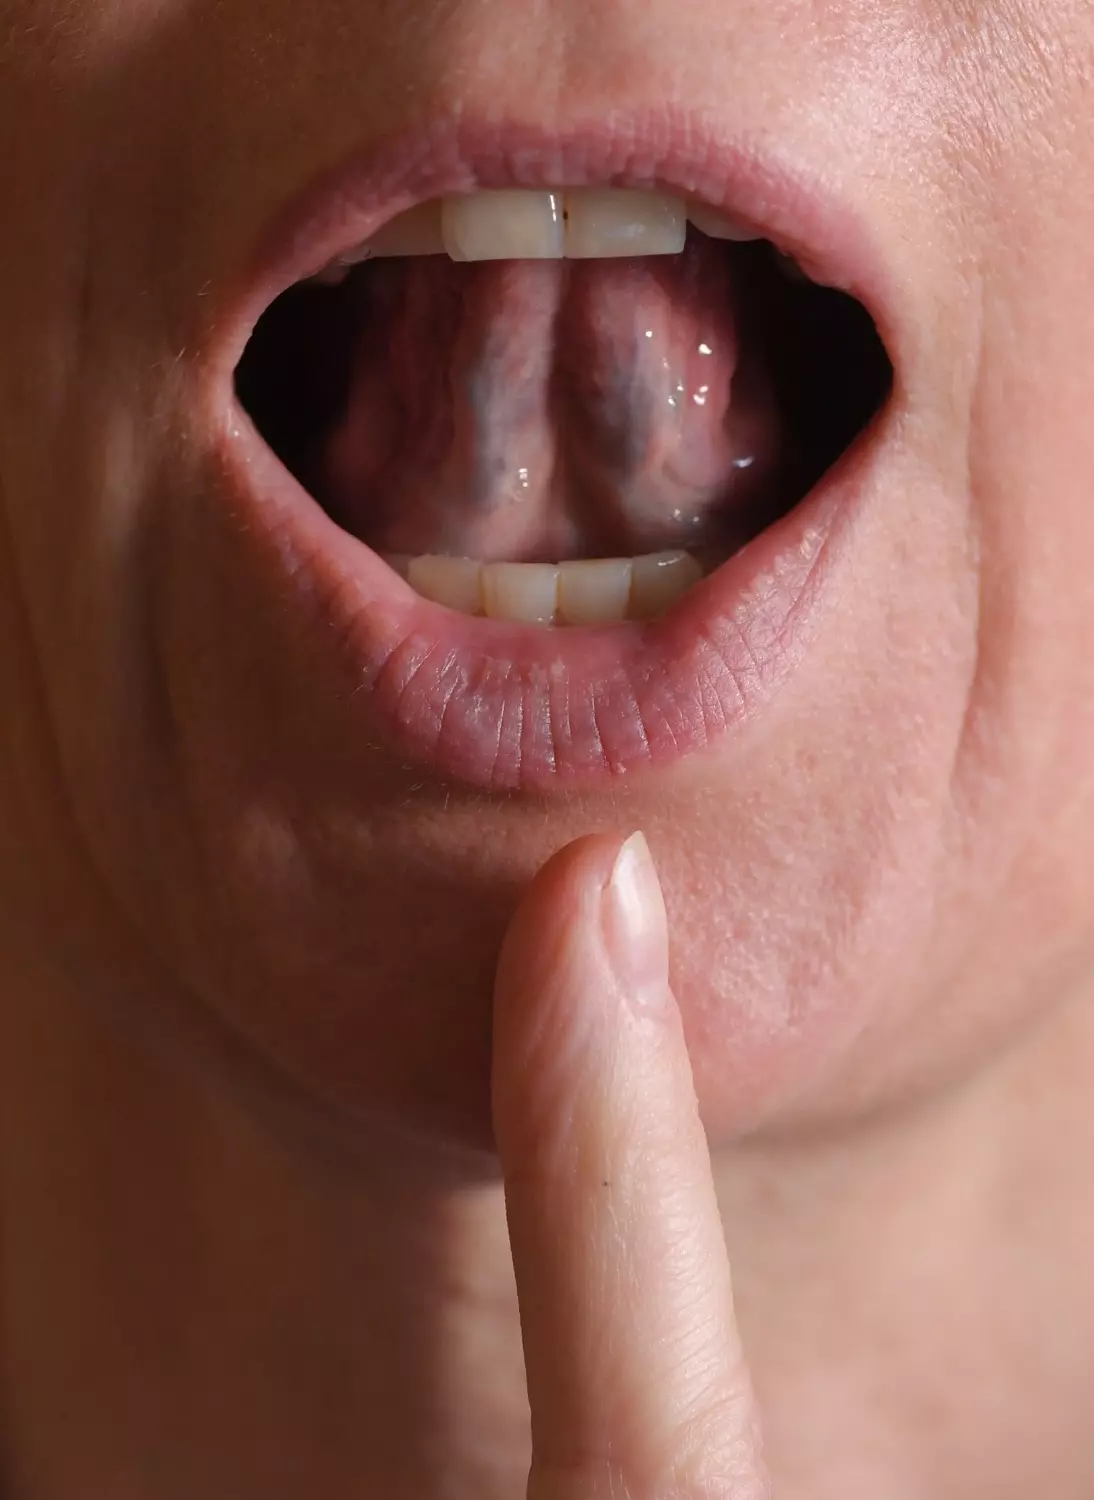 В некоторых случаях «зубчатый» язык может быть следствием недостаточного количества воды в организме